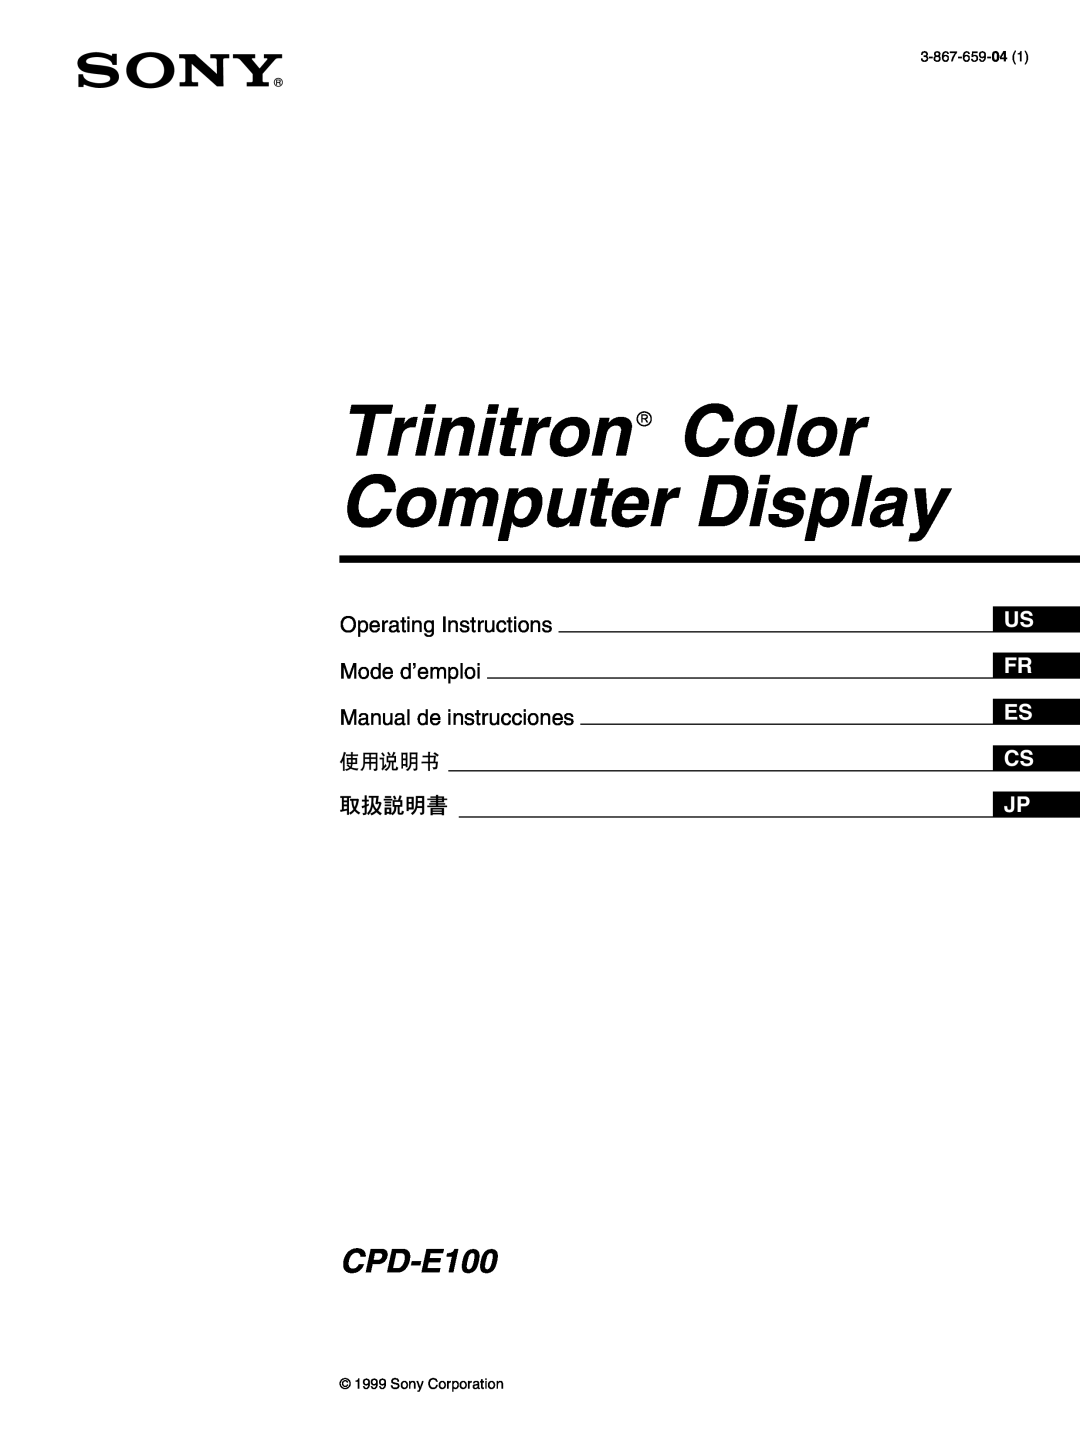 Sony CPD-E100 manual Operating Instructions, Mode d’emploi, Manual de instrucciones, Trinitronâ Color Computer Display 